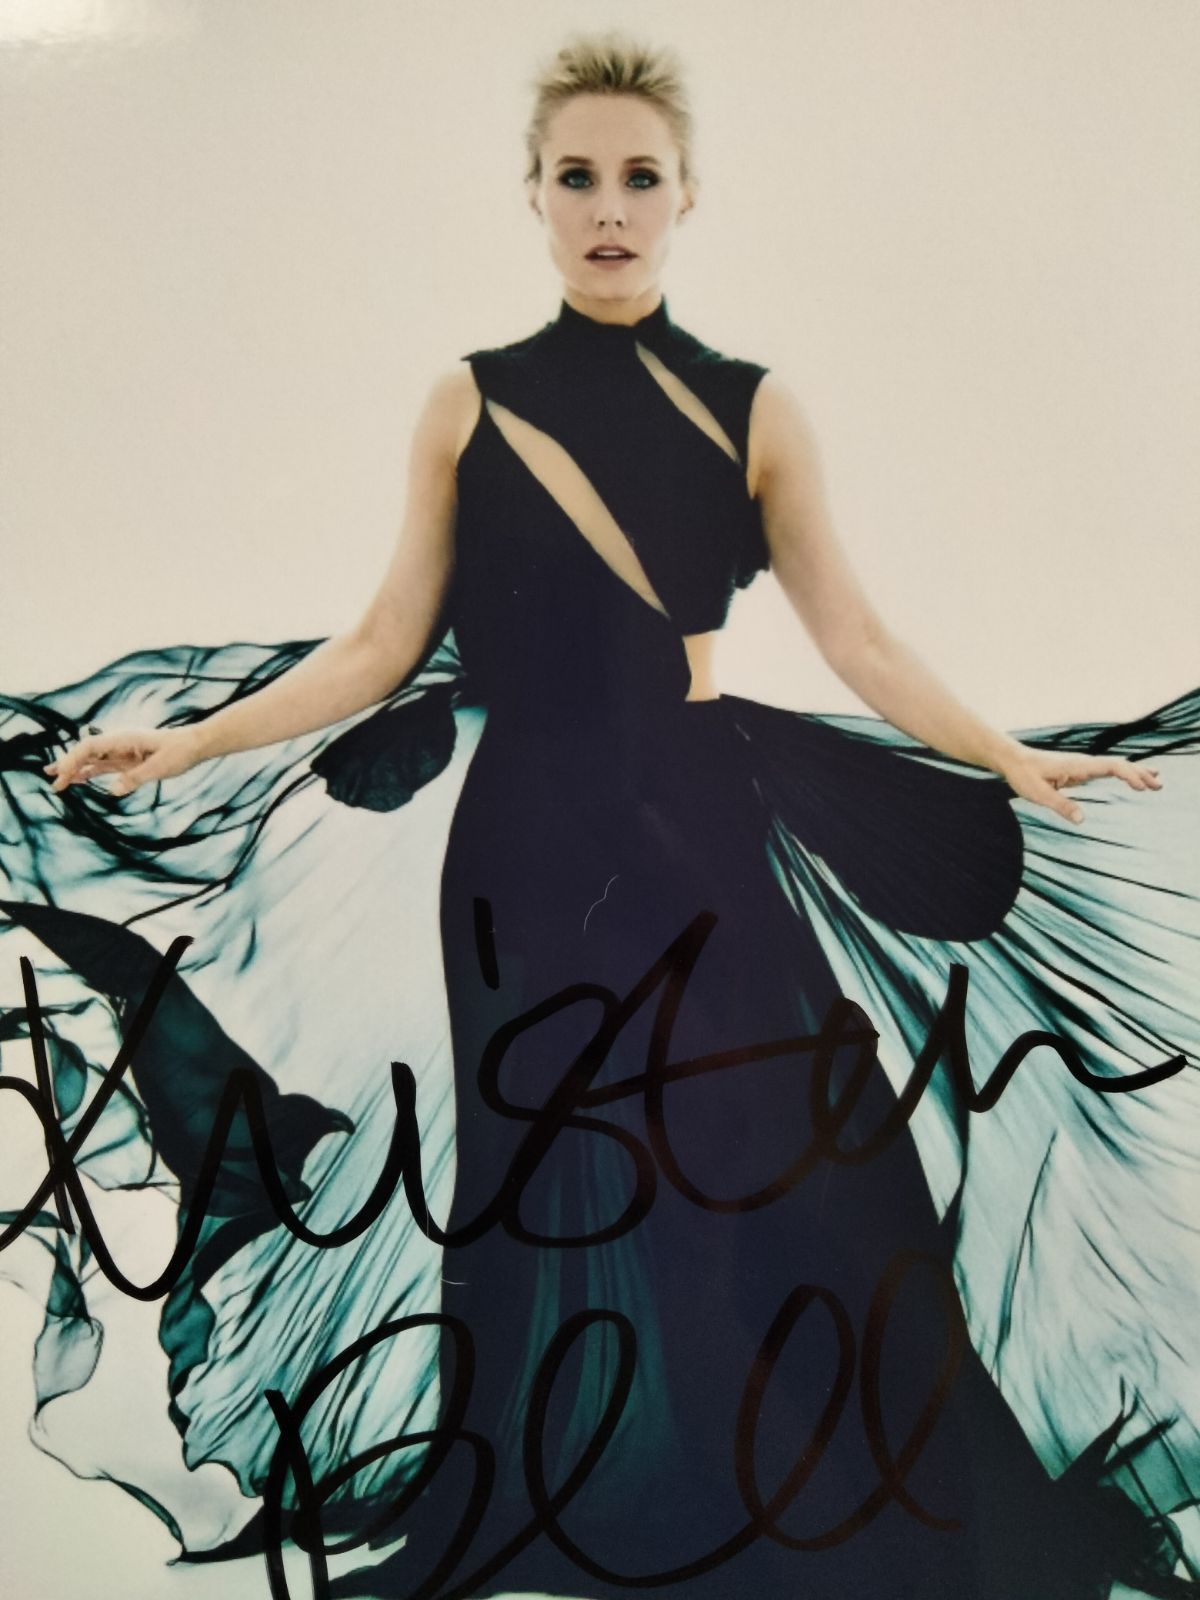 クリスティン・ベル直筆サイン入り超大型写真…Kristen Bell…ゴシップガール